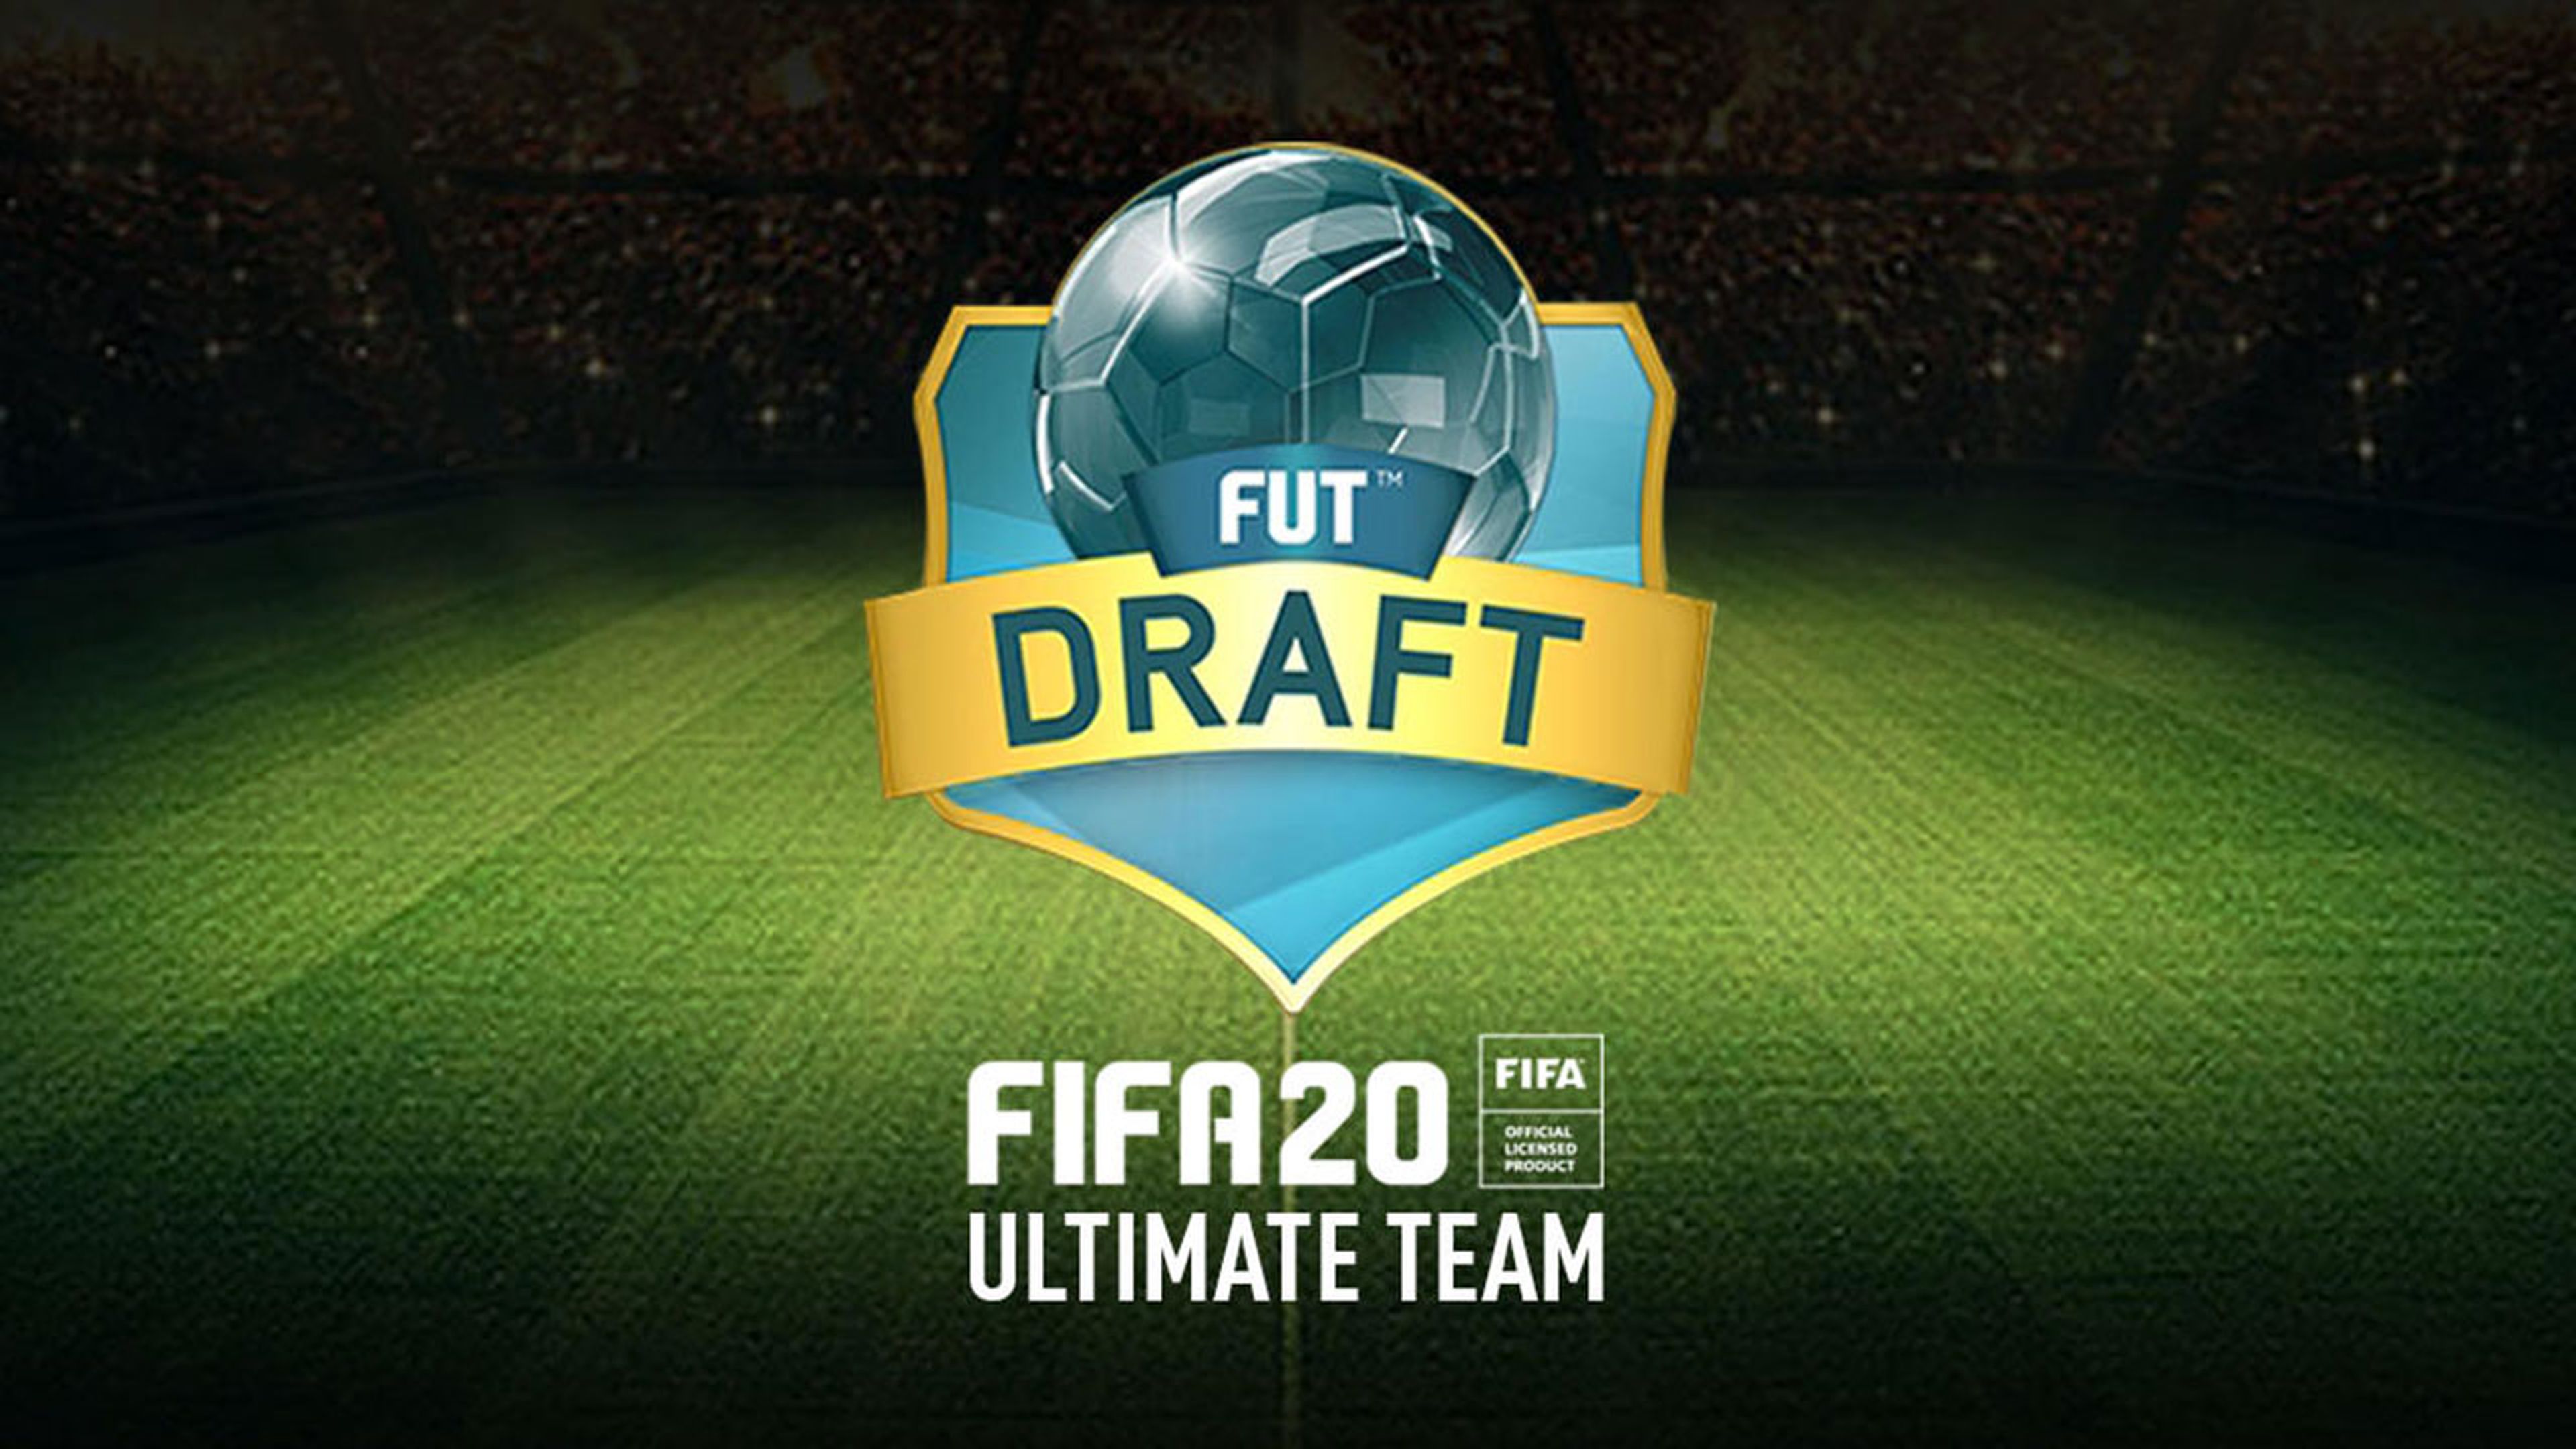 FUT Draft FIFA 20